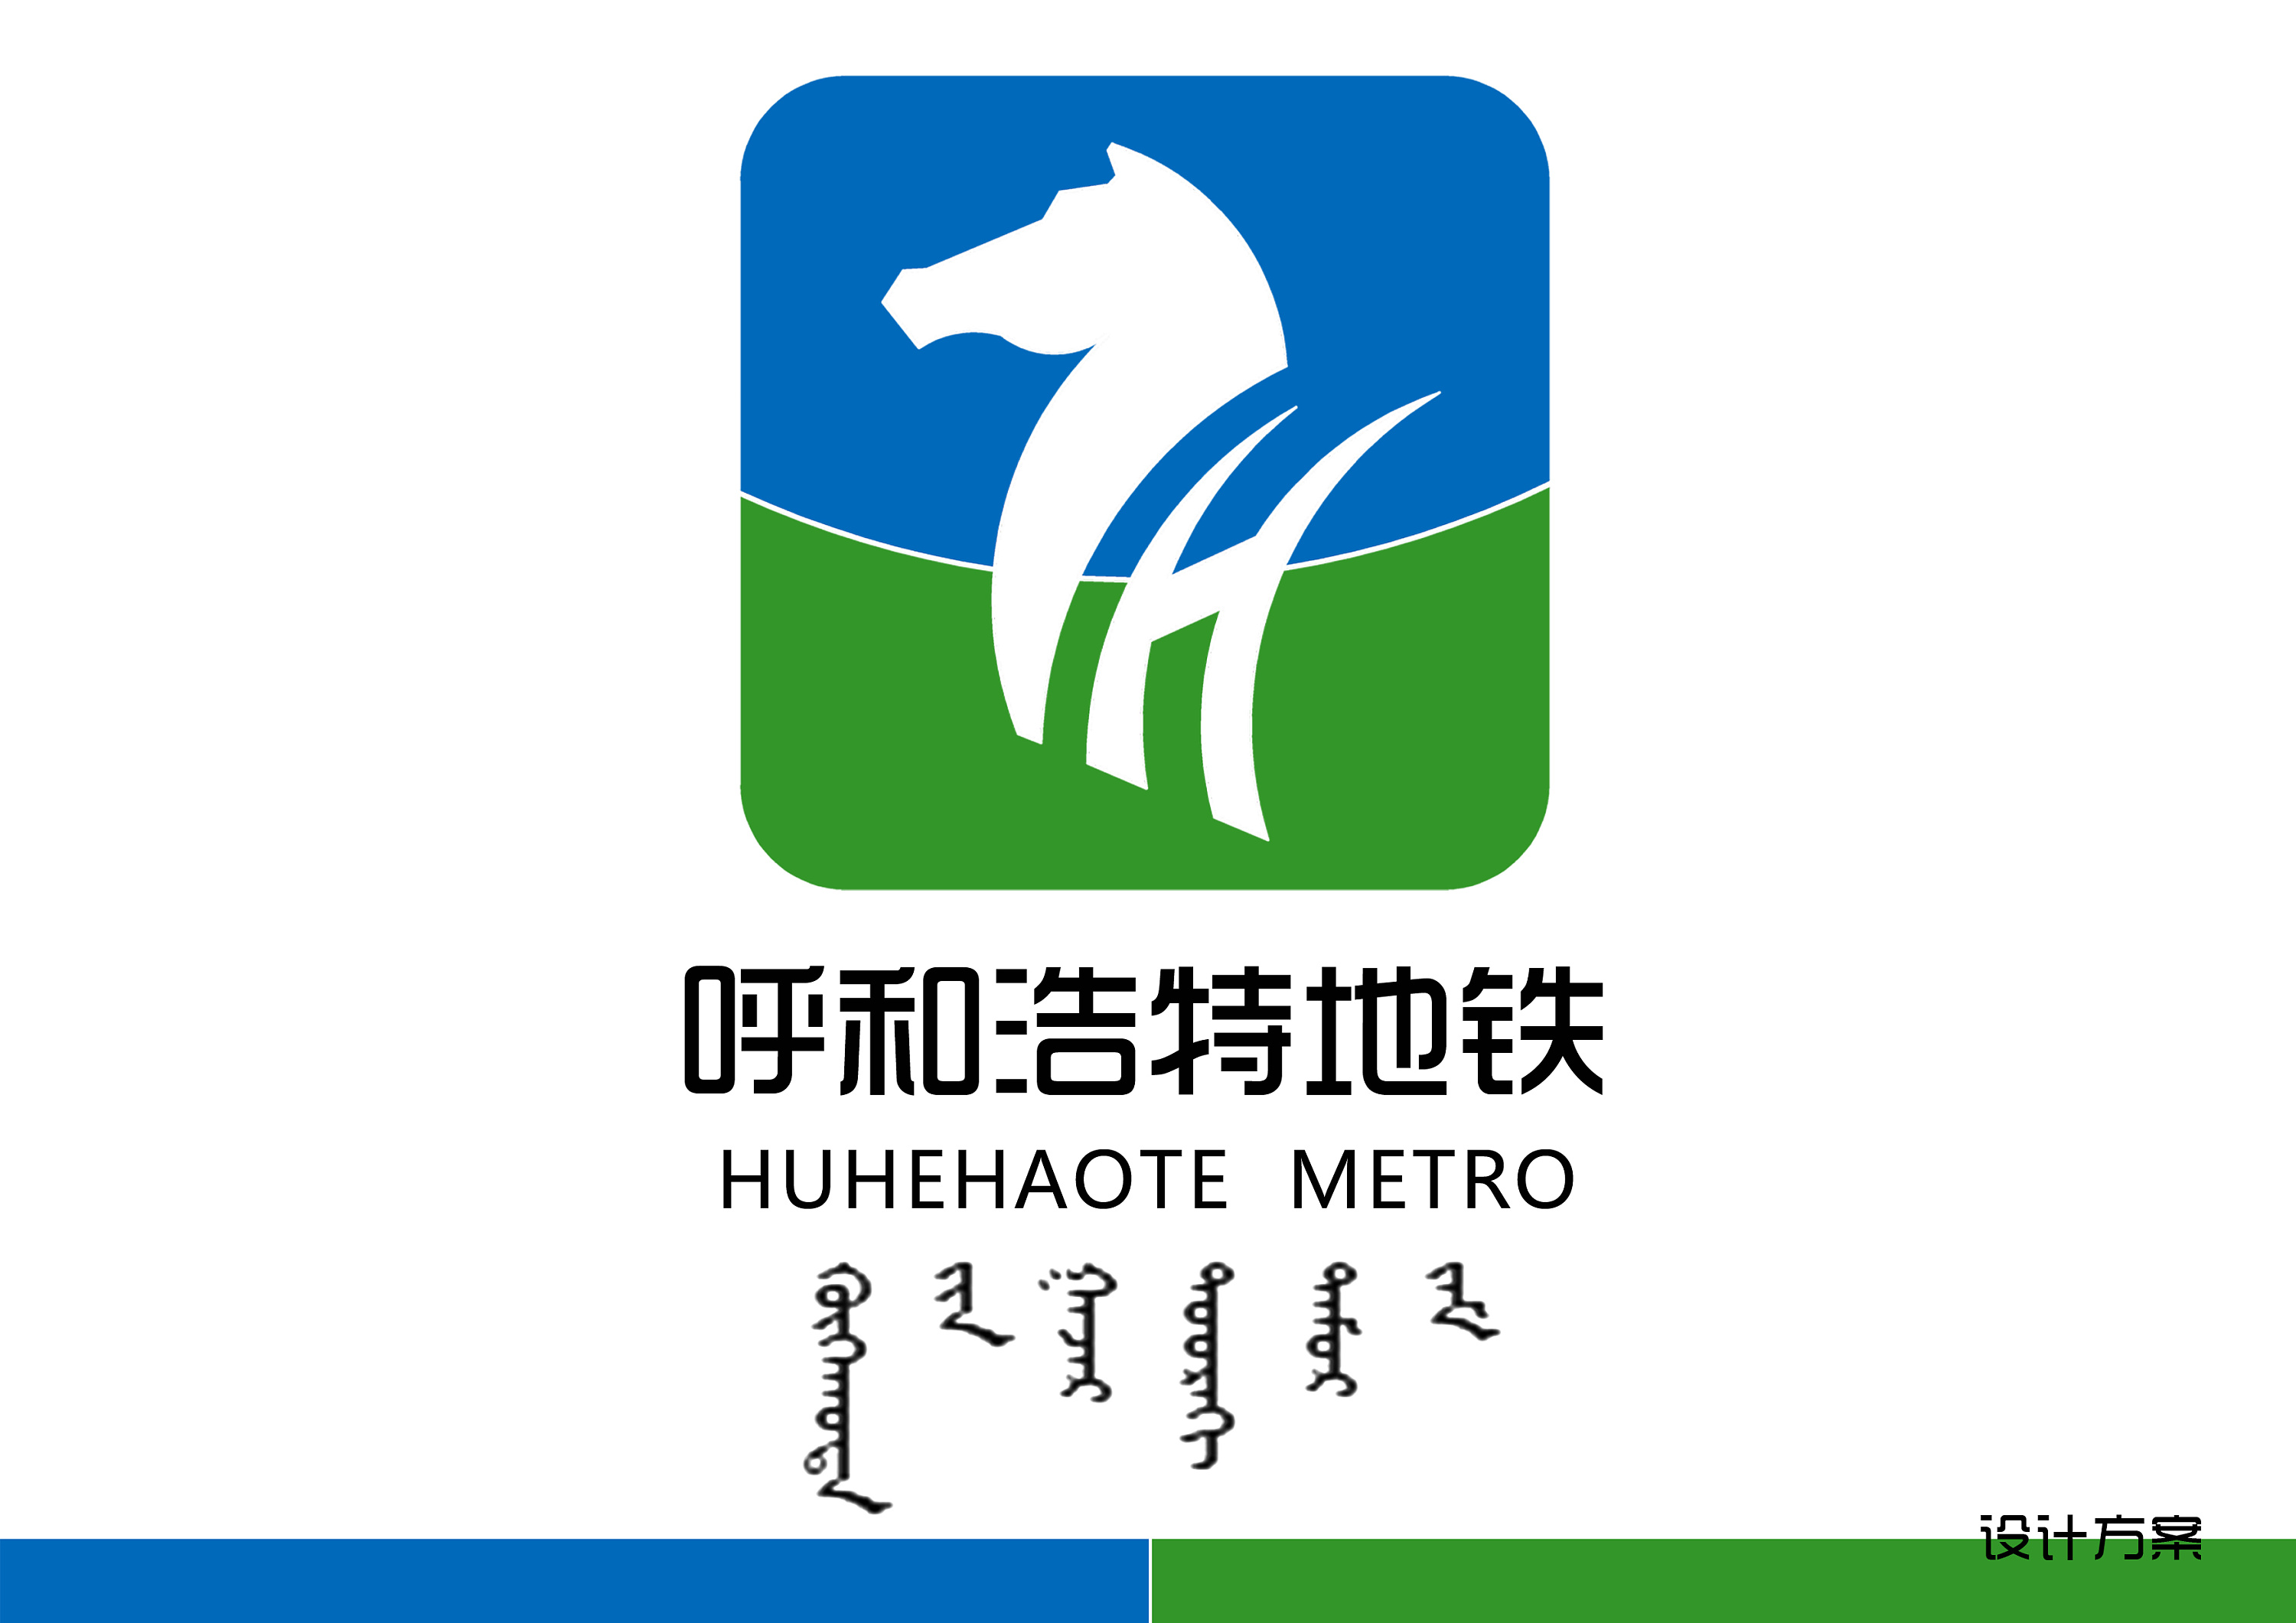 呼市地铁logo设计